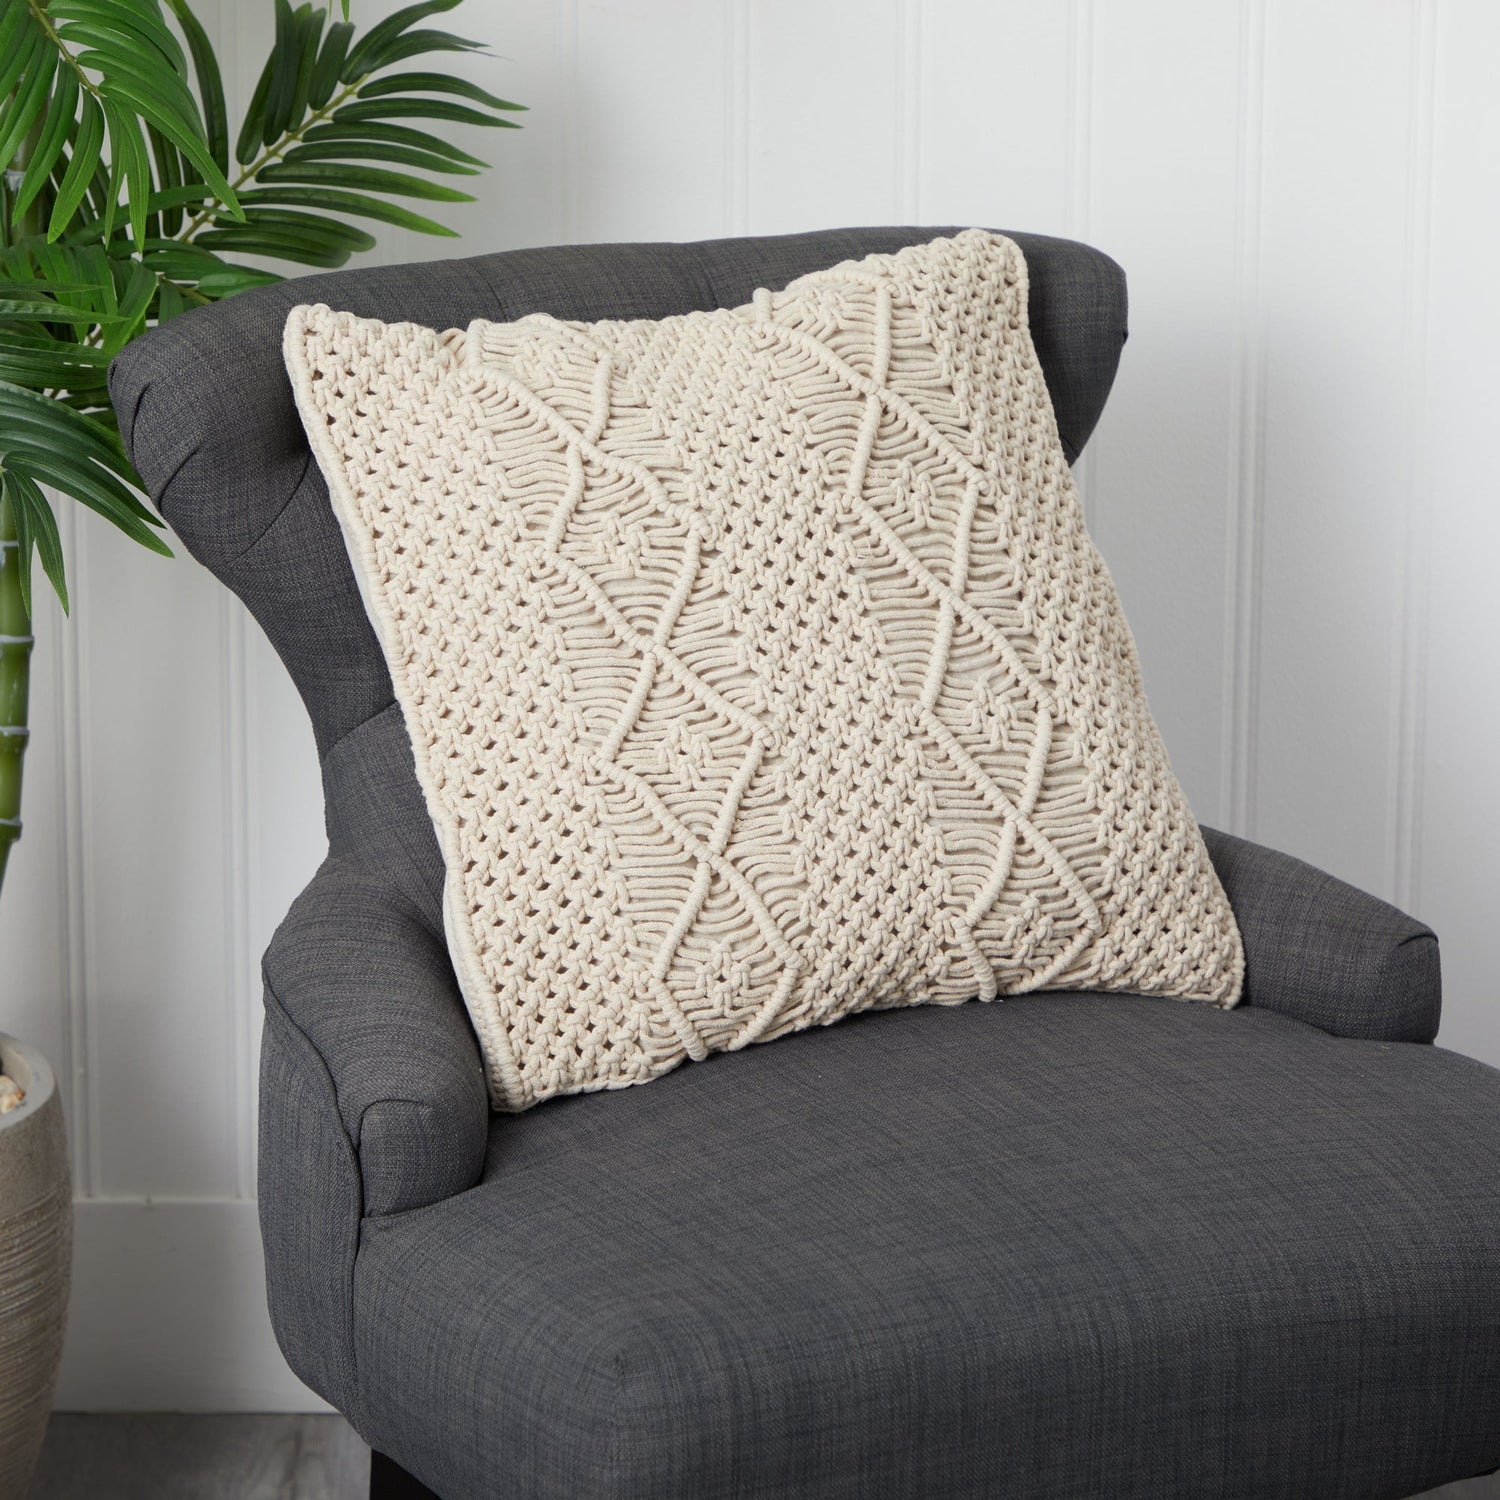 16” BOHO Woven Macrame Decorative Pillow Cover